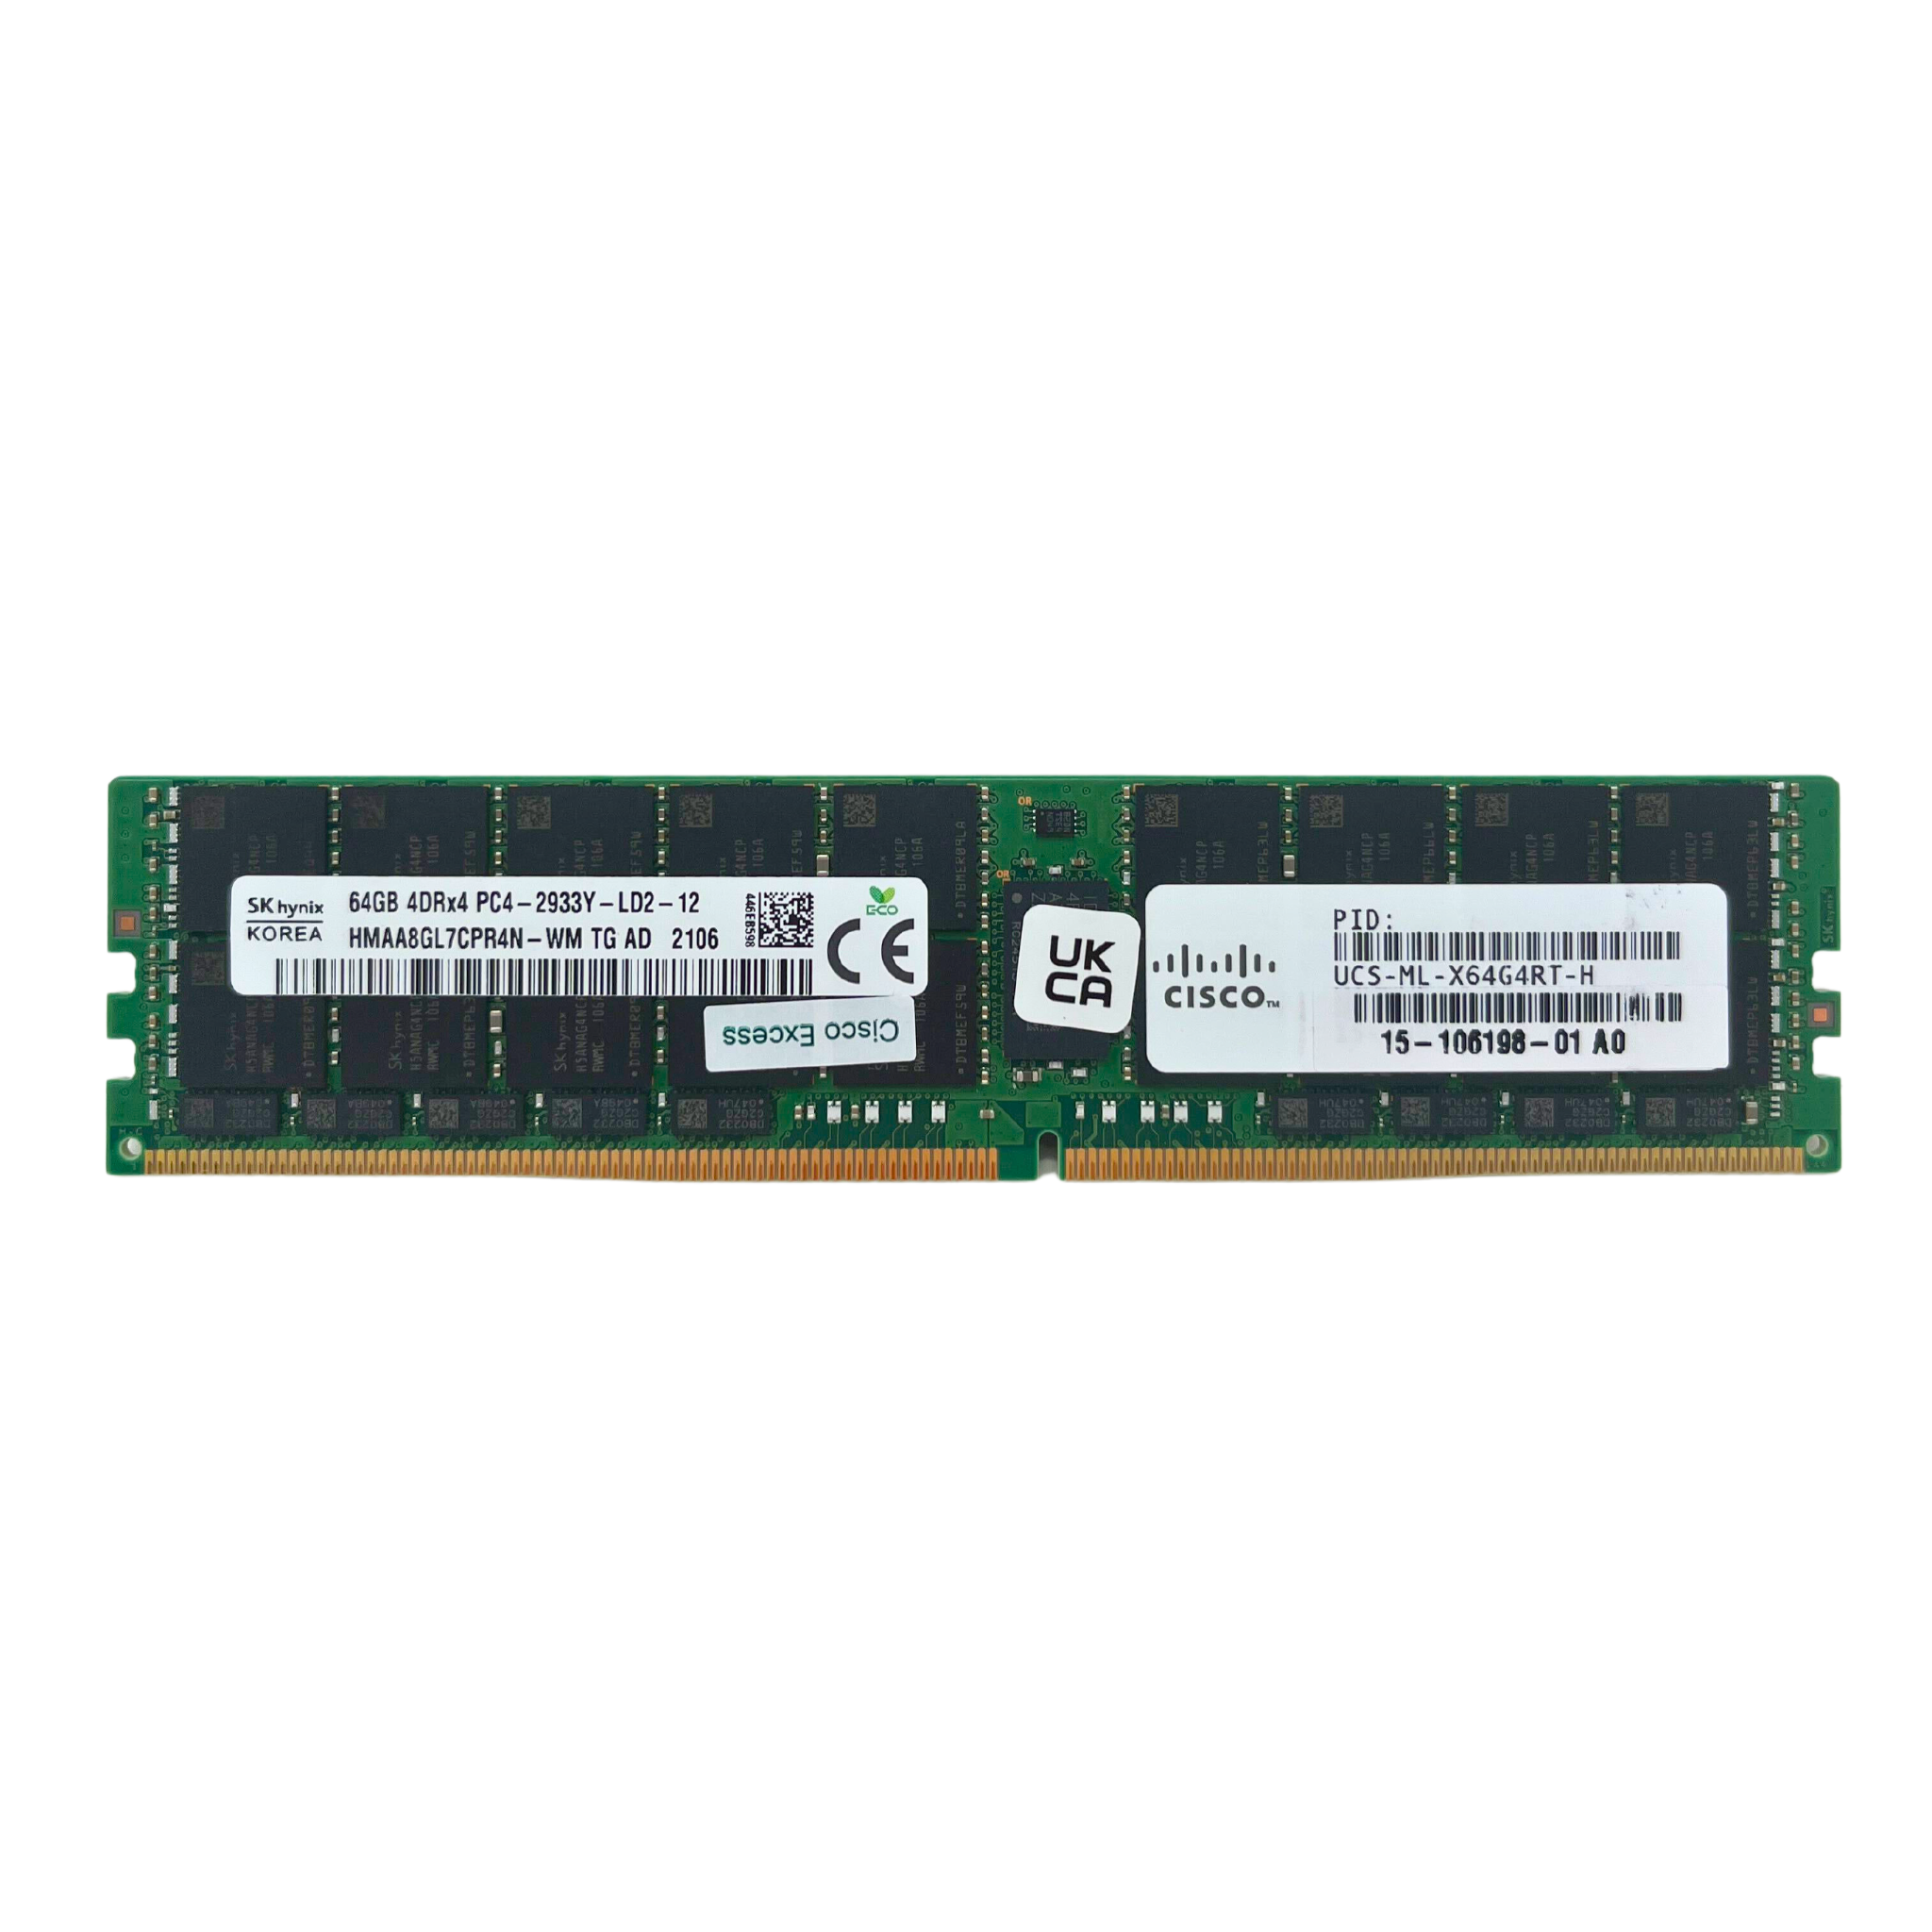 Cisco 64GB 4DRX4 PC4-2933Y  ECC  Registered  LRDIMM Memory  (HMAA8GL7CPR4N-WM TG-CISCO)